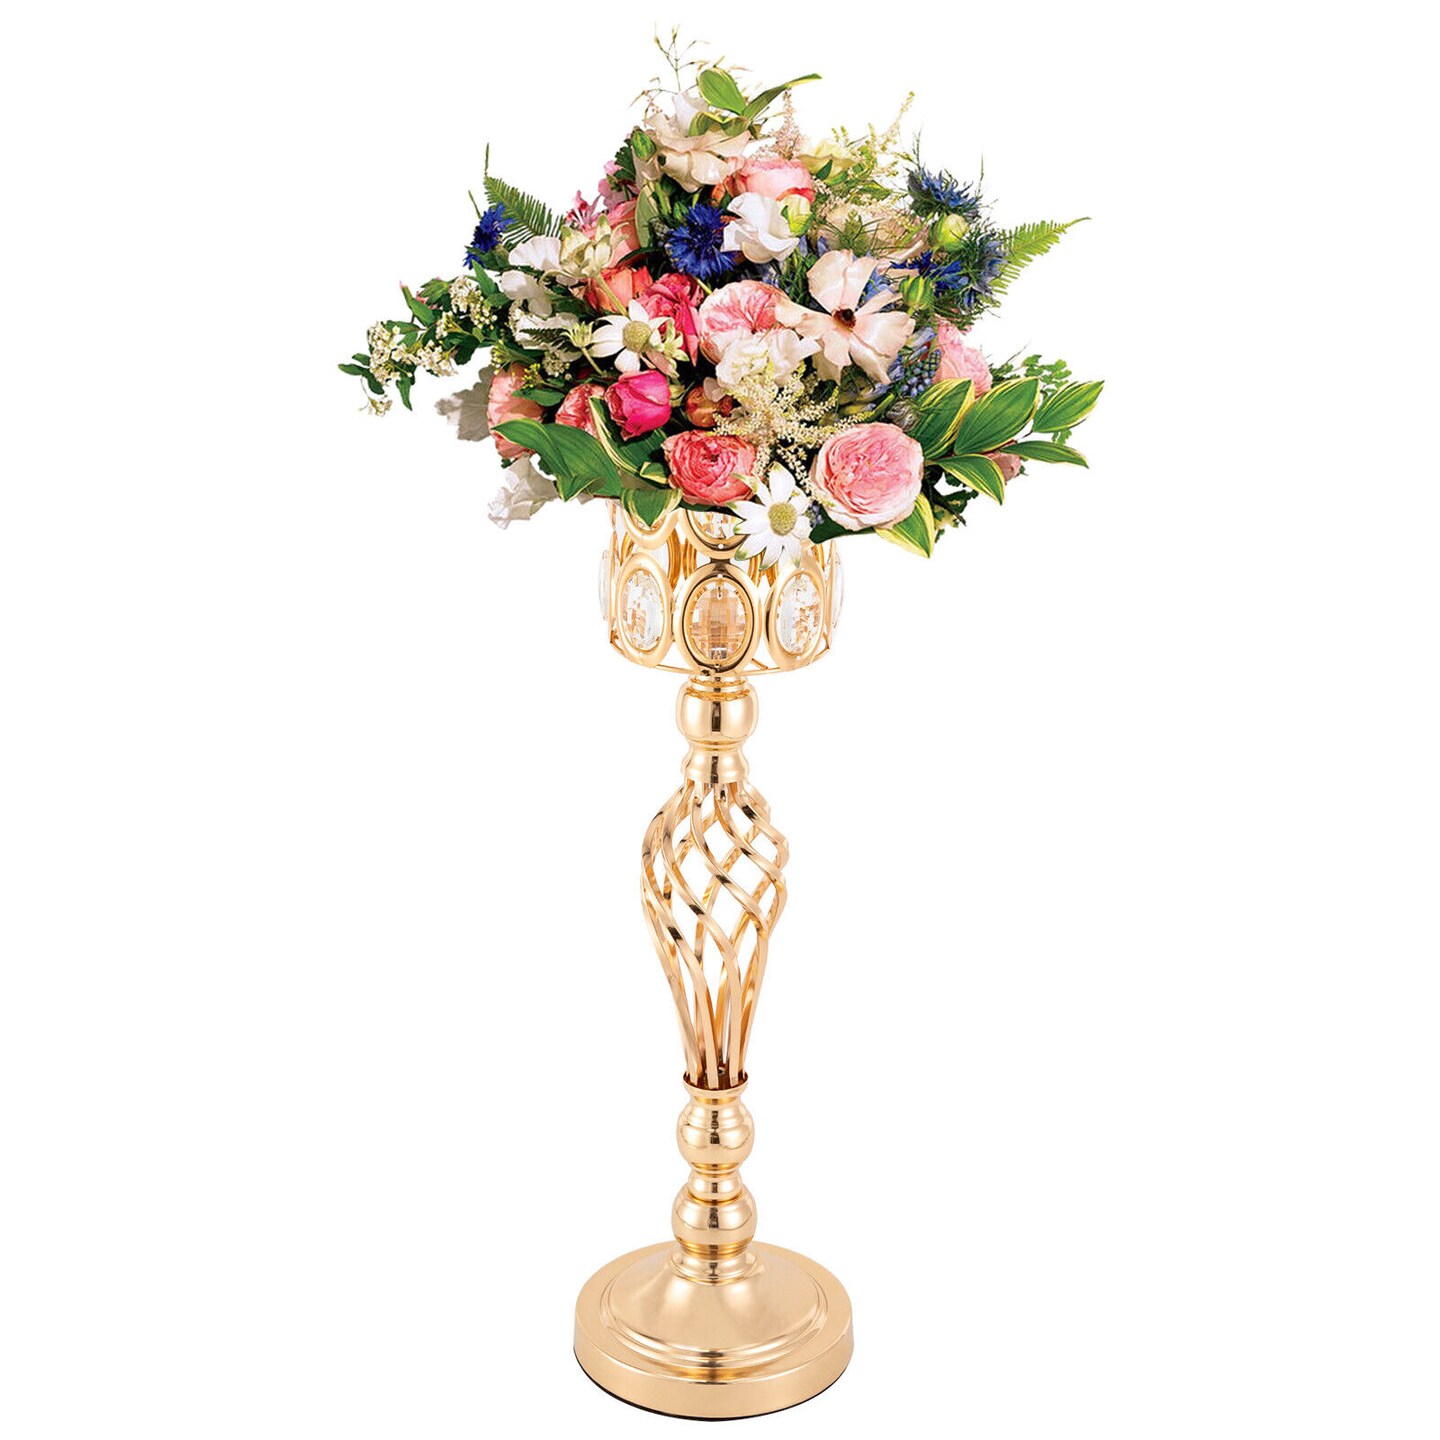 Kitcheniva 23.6 Inches Flower Vase Centerpieces Stand